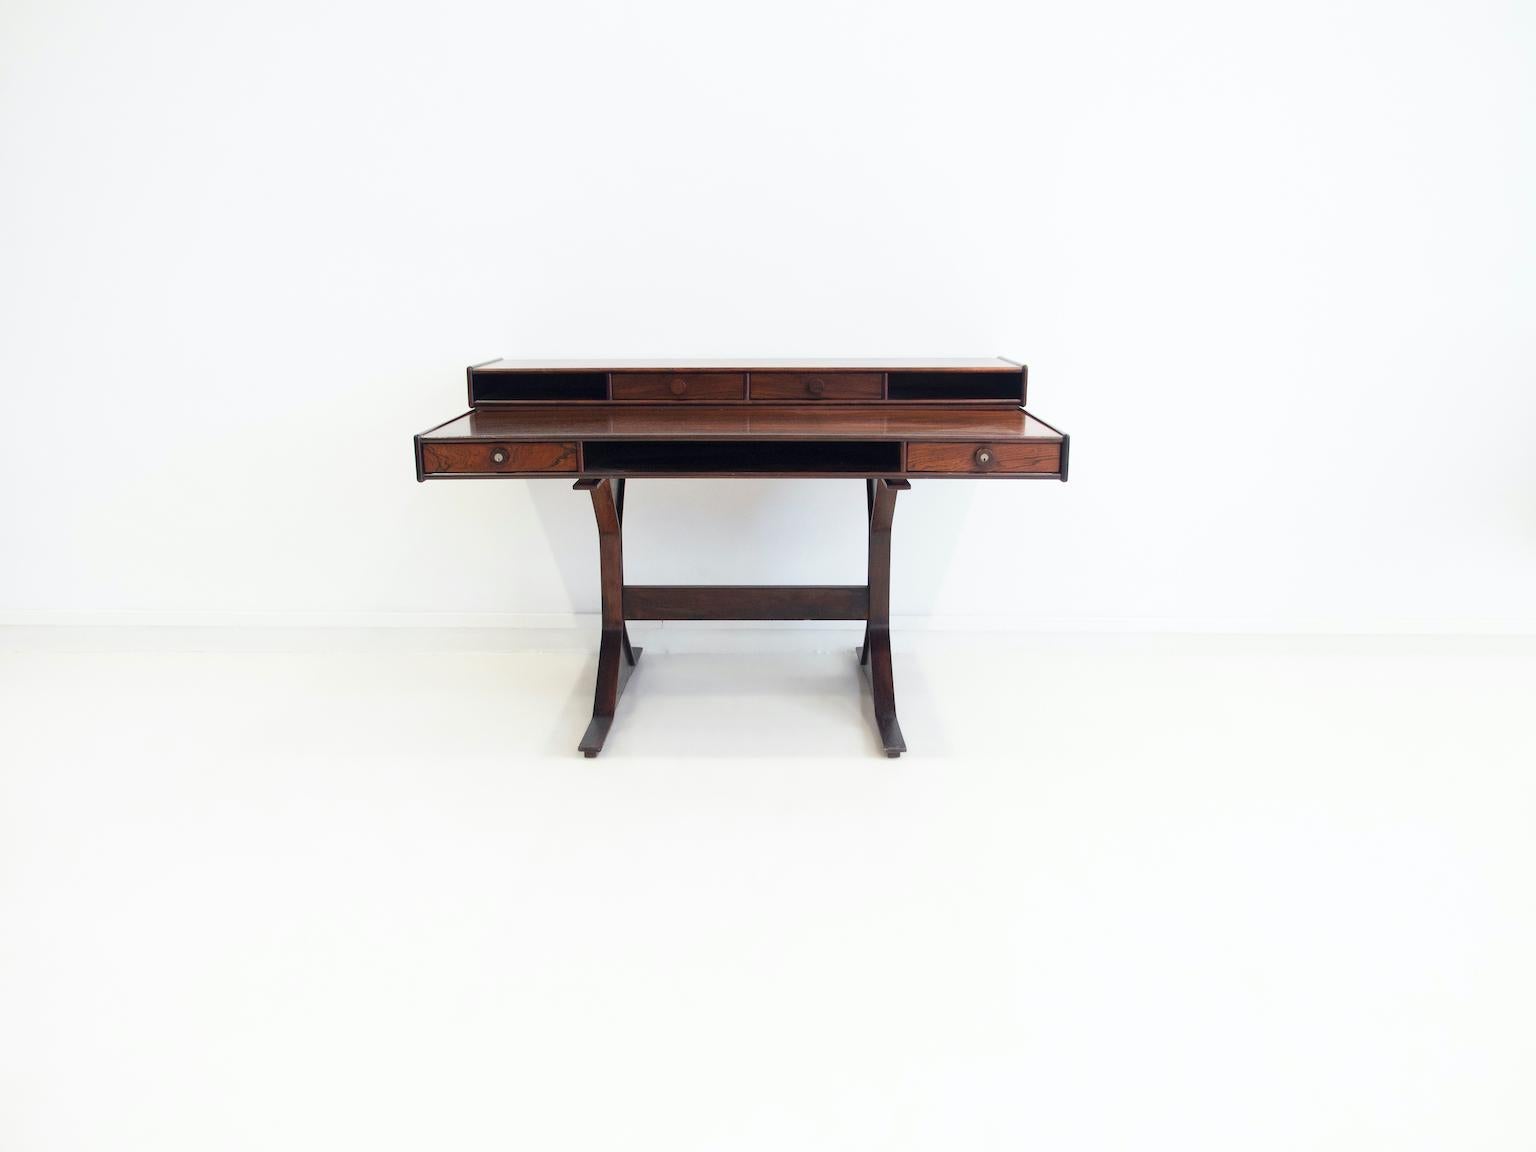 Schreibtisch aus Hartholz, entworfen von Gianfranco Frattini und hergestellt von Bernini, Italien. Der Schreibtisch verfügt über ein abnehmbares Oberteil mit zusätzlichen Schubladen und Ablagefächern. Dieser Schreibtisch kann an der Wand oder in der